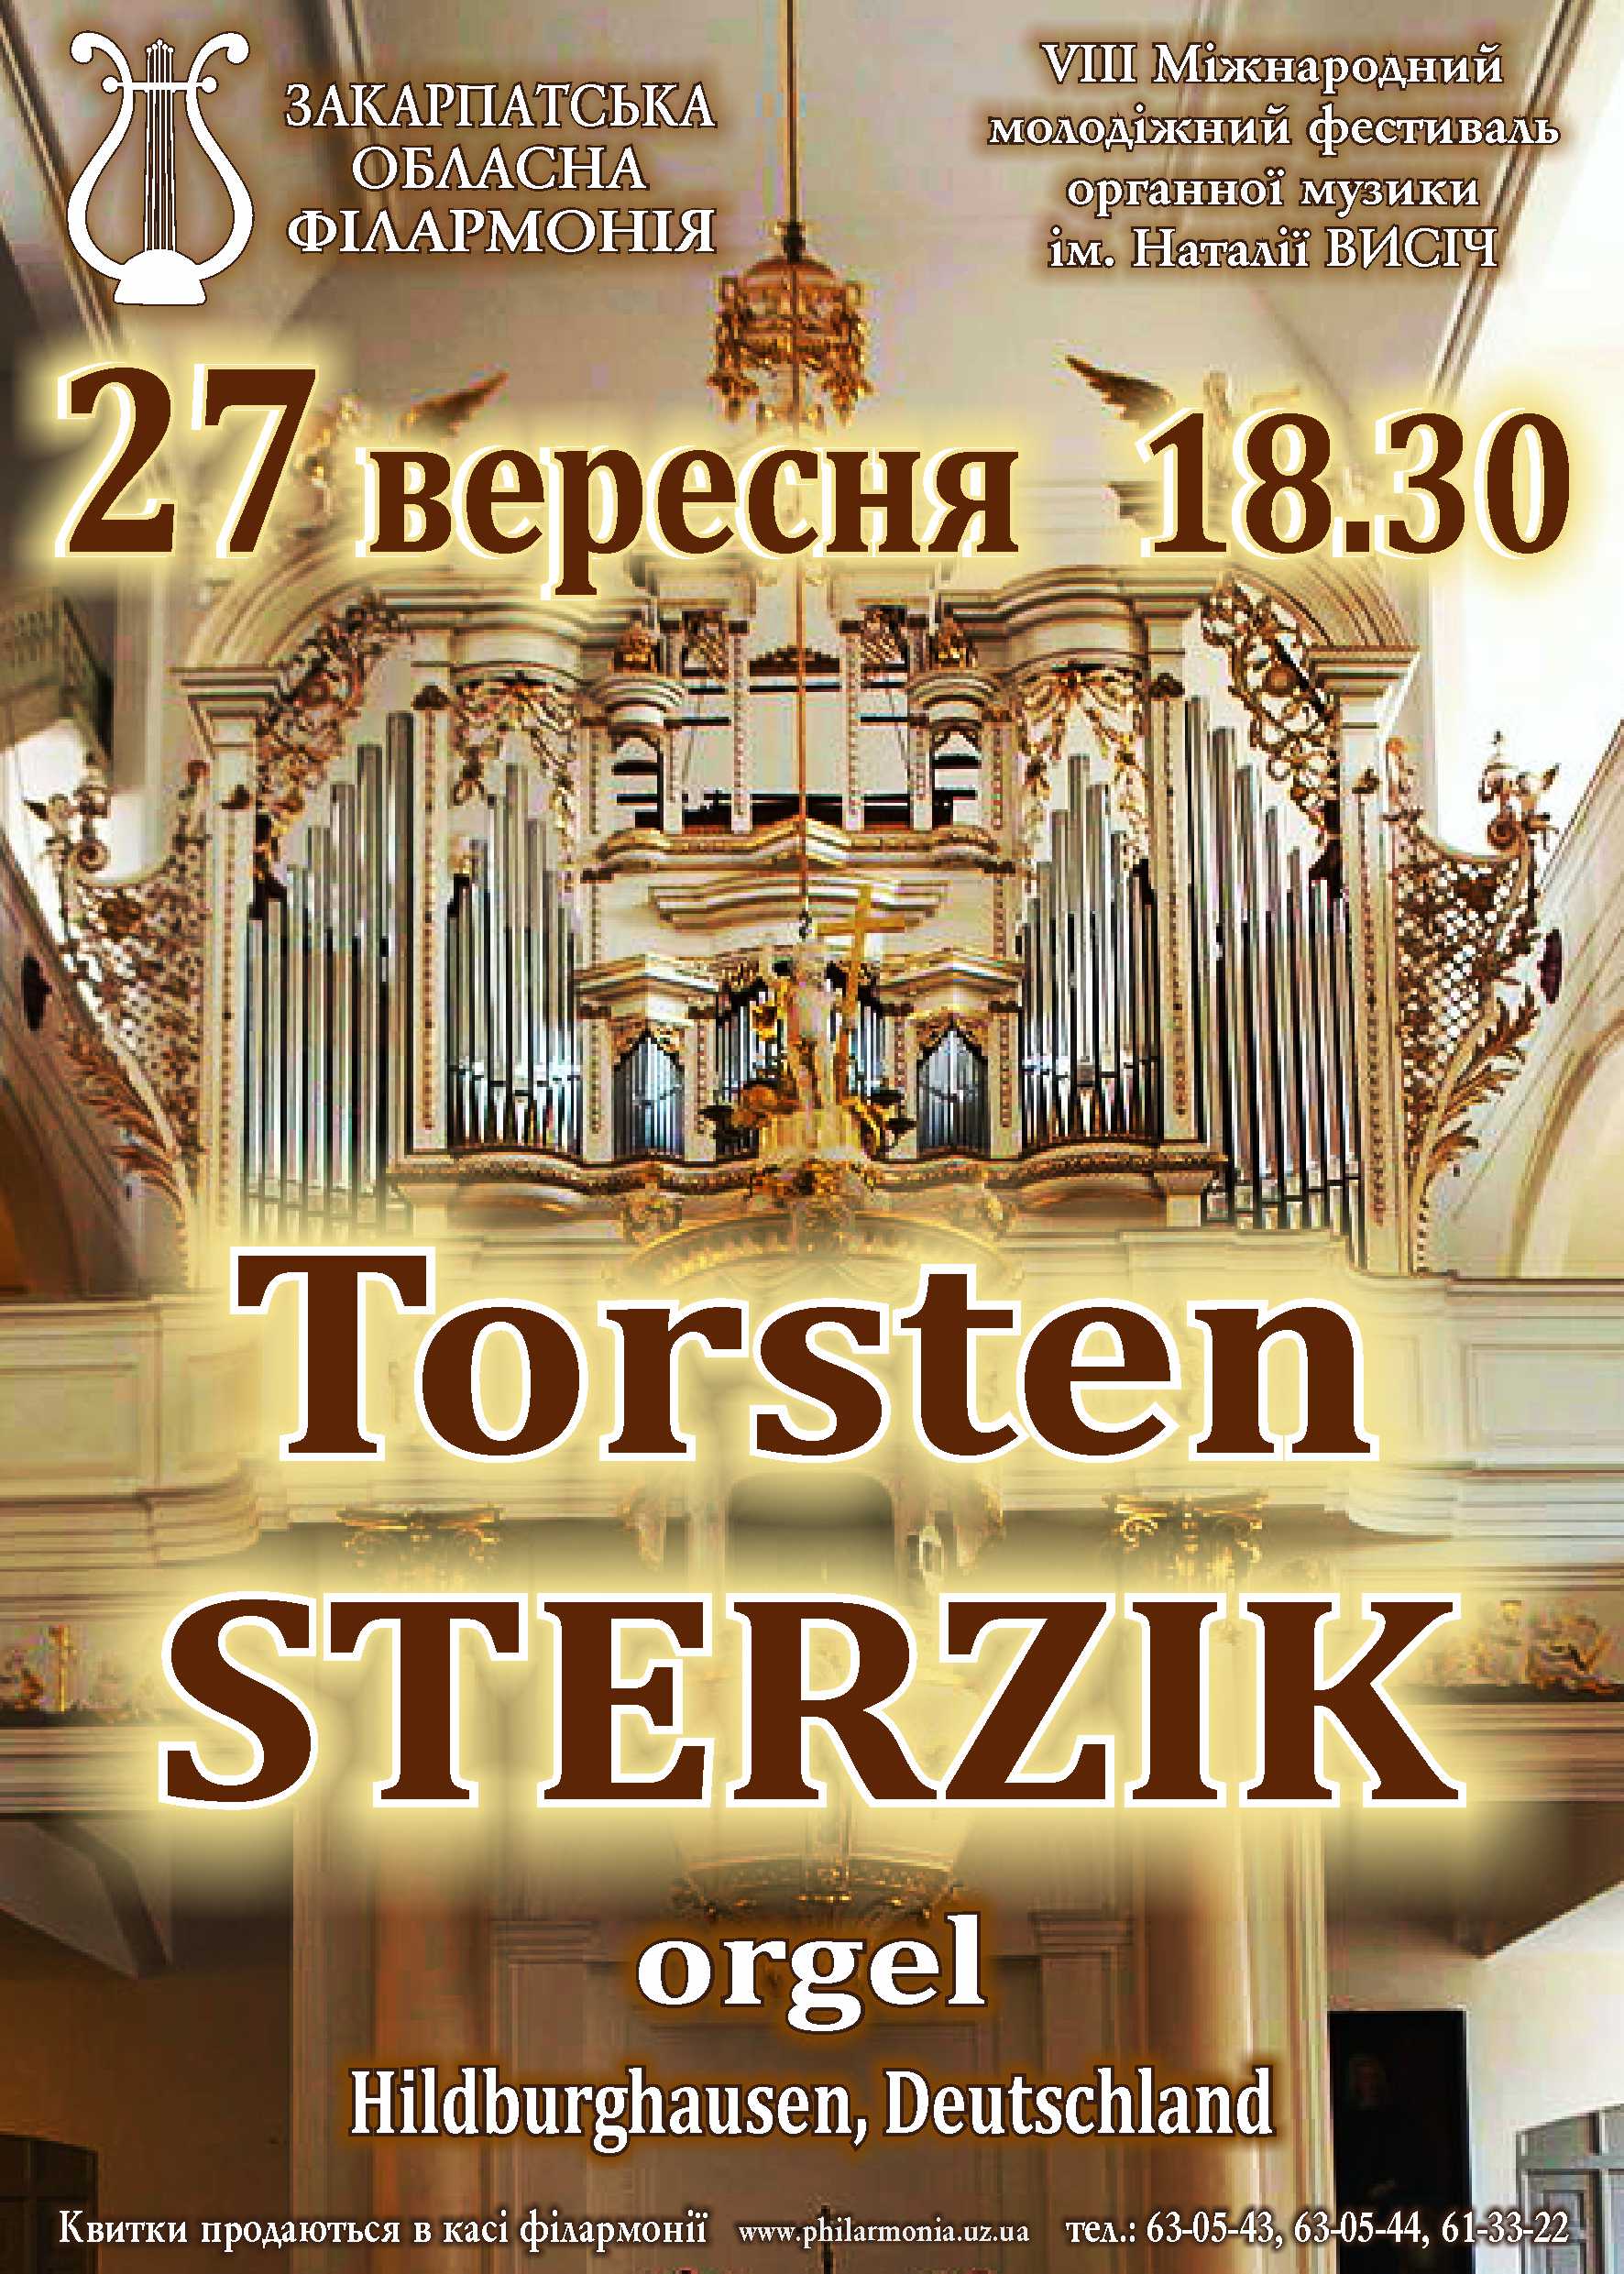 В Закарпатской областной филармонии продолжается VIII Международный молодежный фестиваль органной музыки им.Натальи Высич.